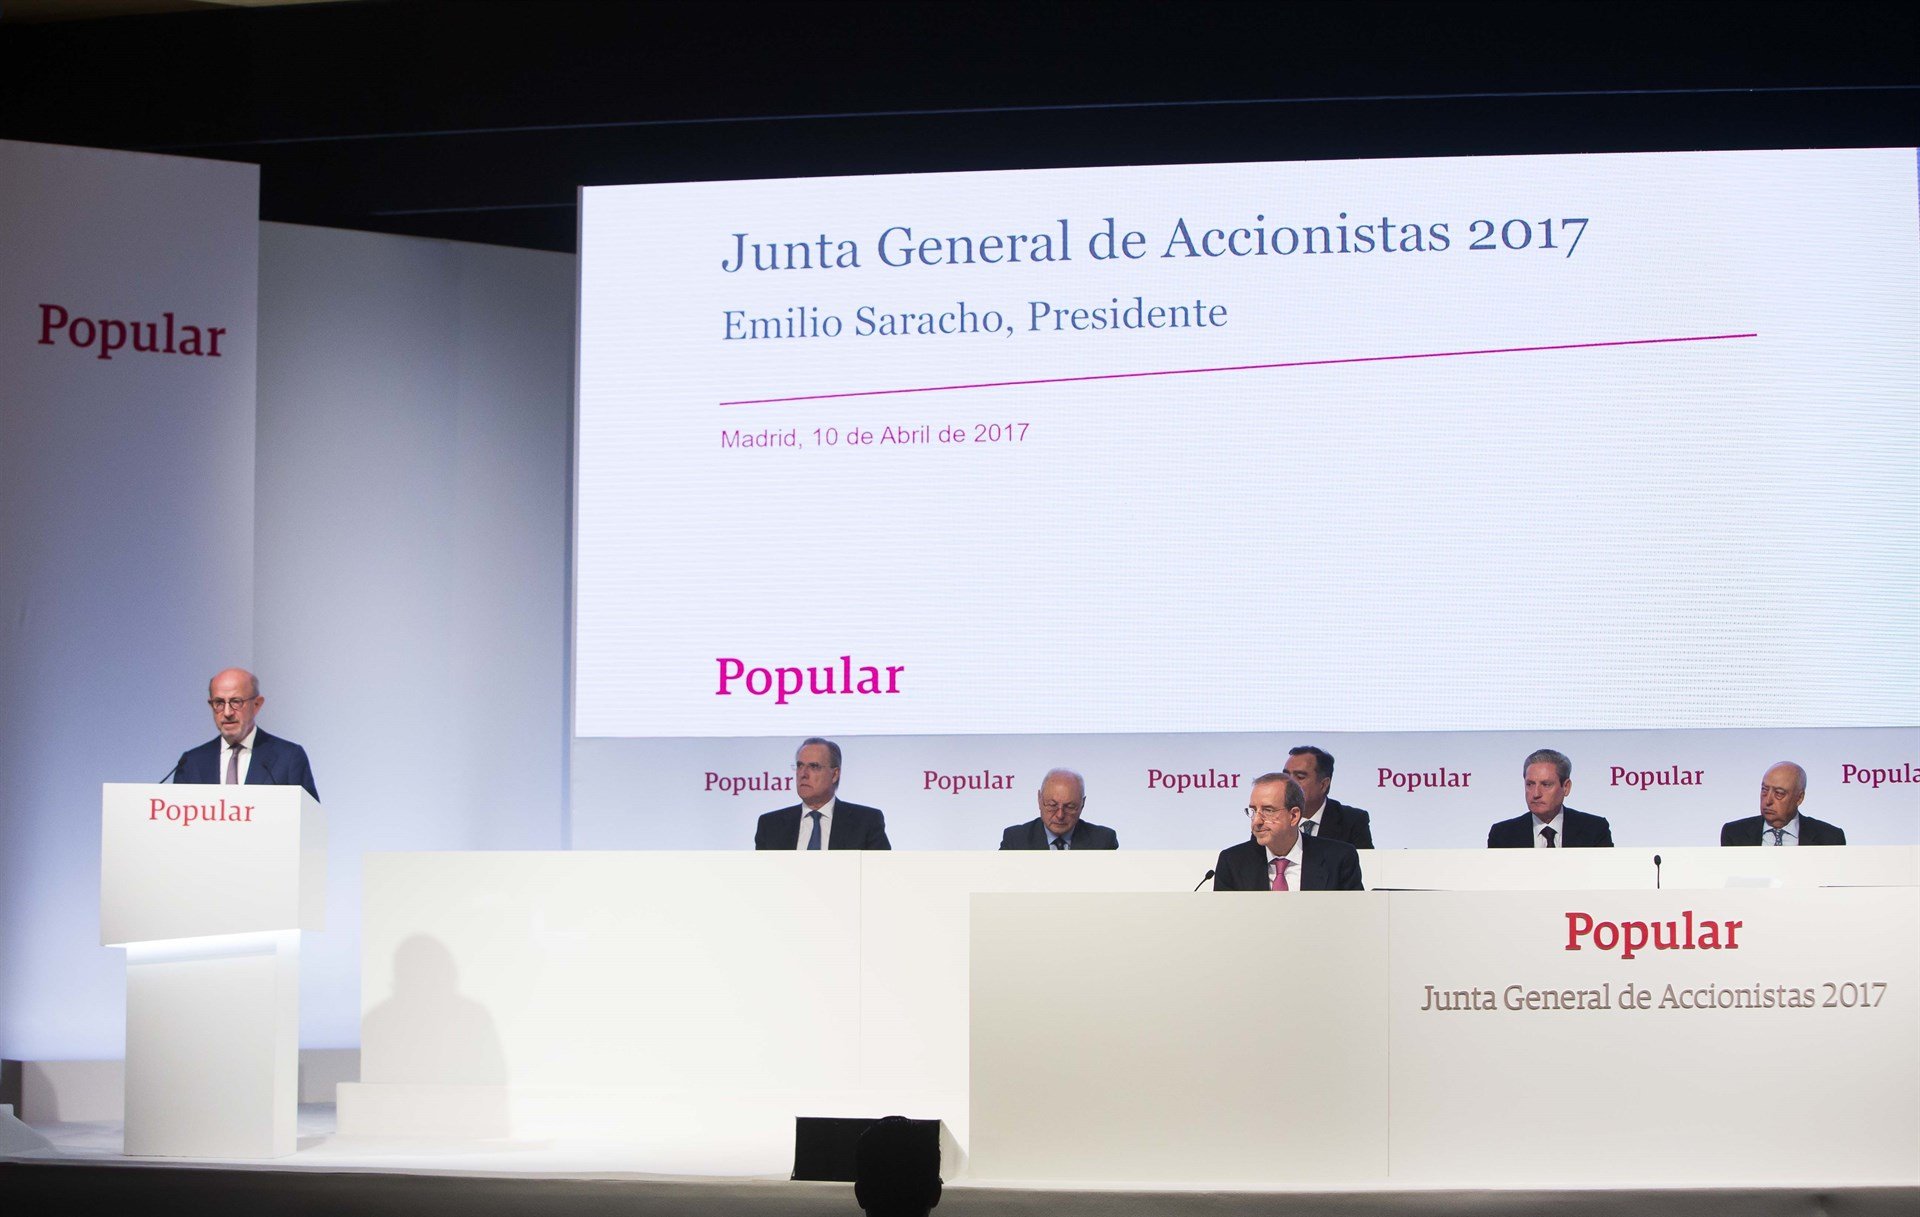 Banco Santander destituye a Emilio Saracho y a toda la cúpula del Popular